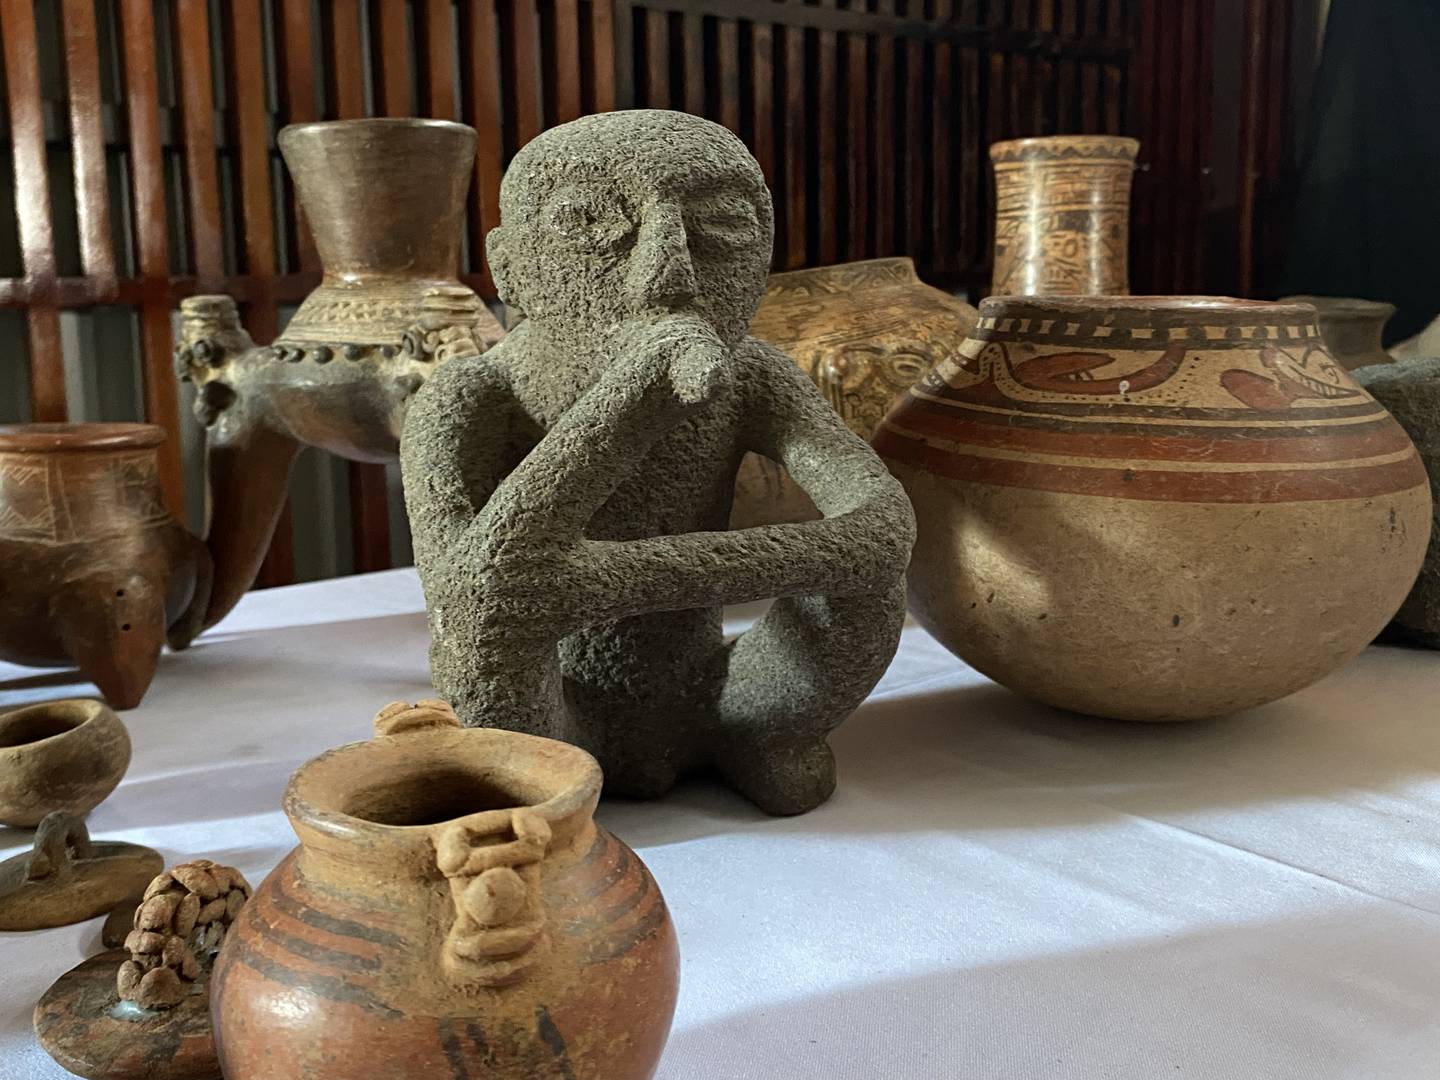 395 bienes arqueológicos que estaban resguardados en sedes diplomáticas de Costa Rica en Los Ángeles, Miami y Washington DC, fueron repatriados al país el pasado el 24 de febrero.